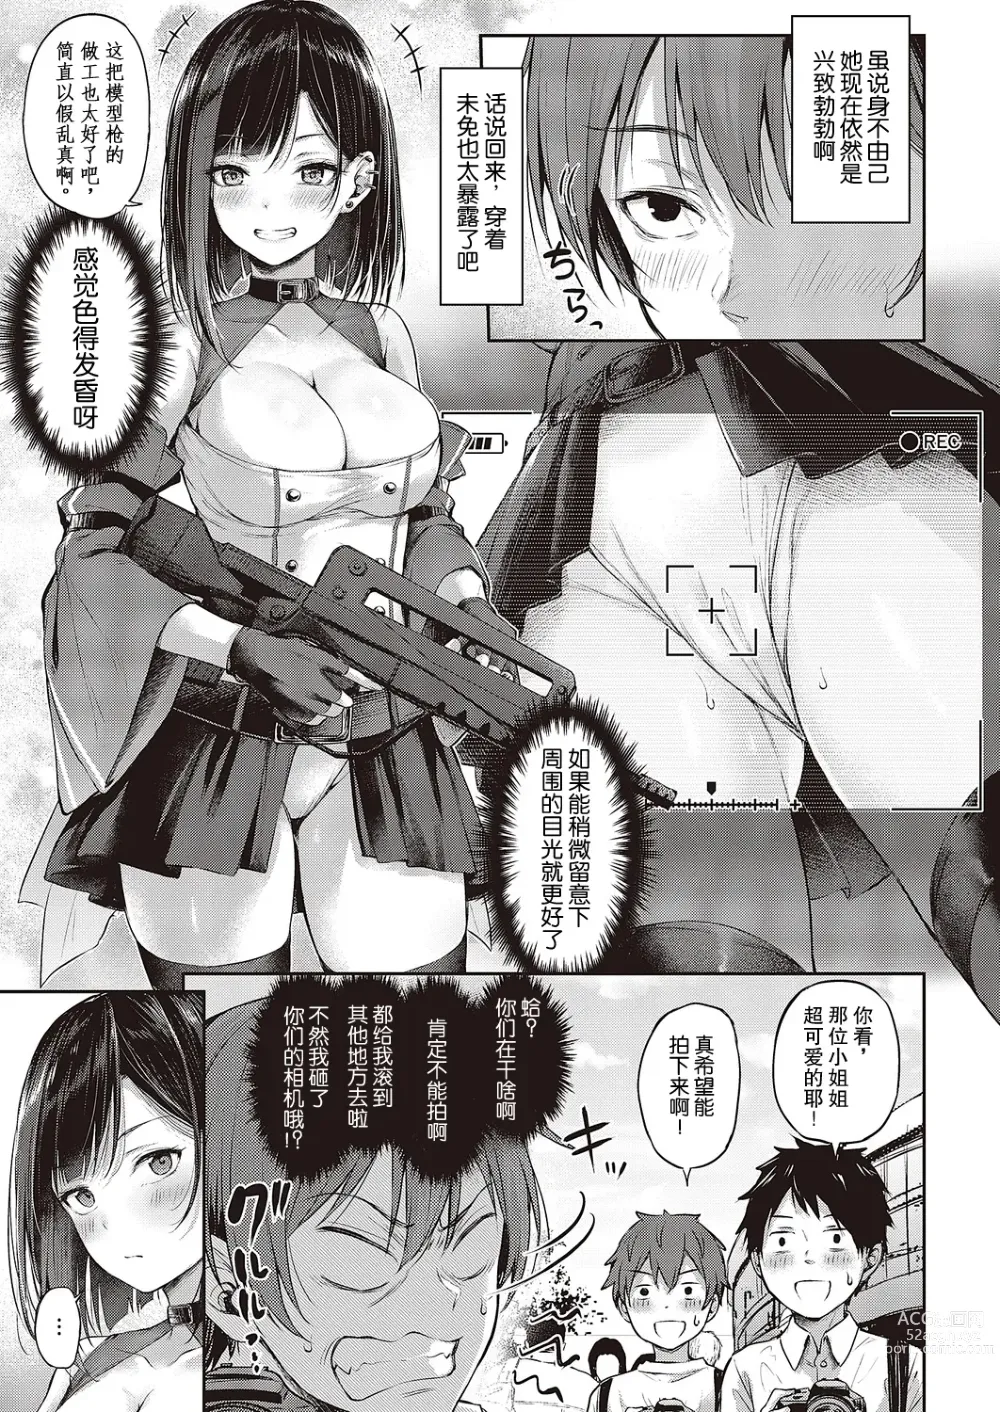 Page 3 of manga 恋爱枪战 绝地反击